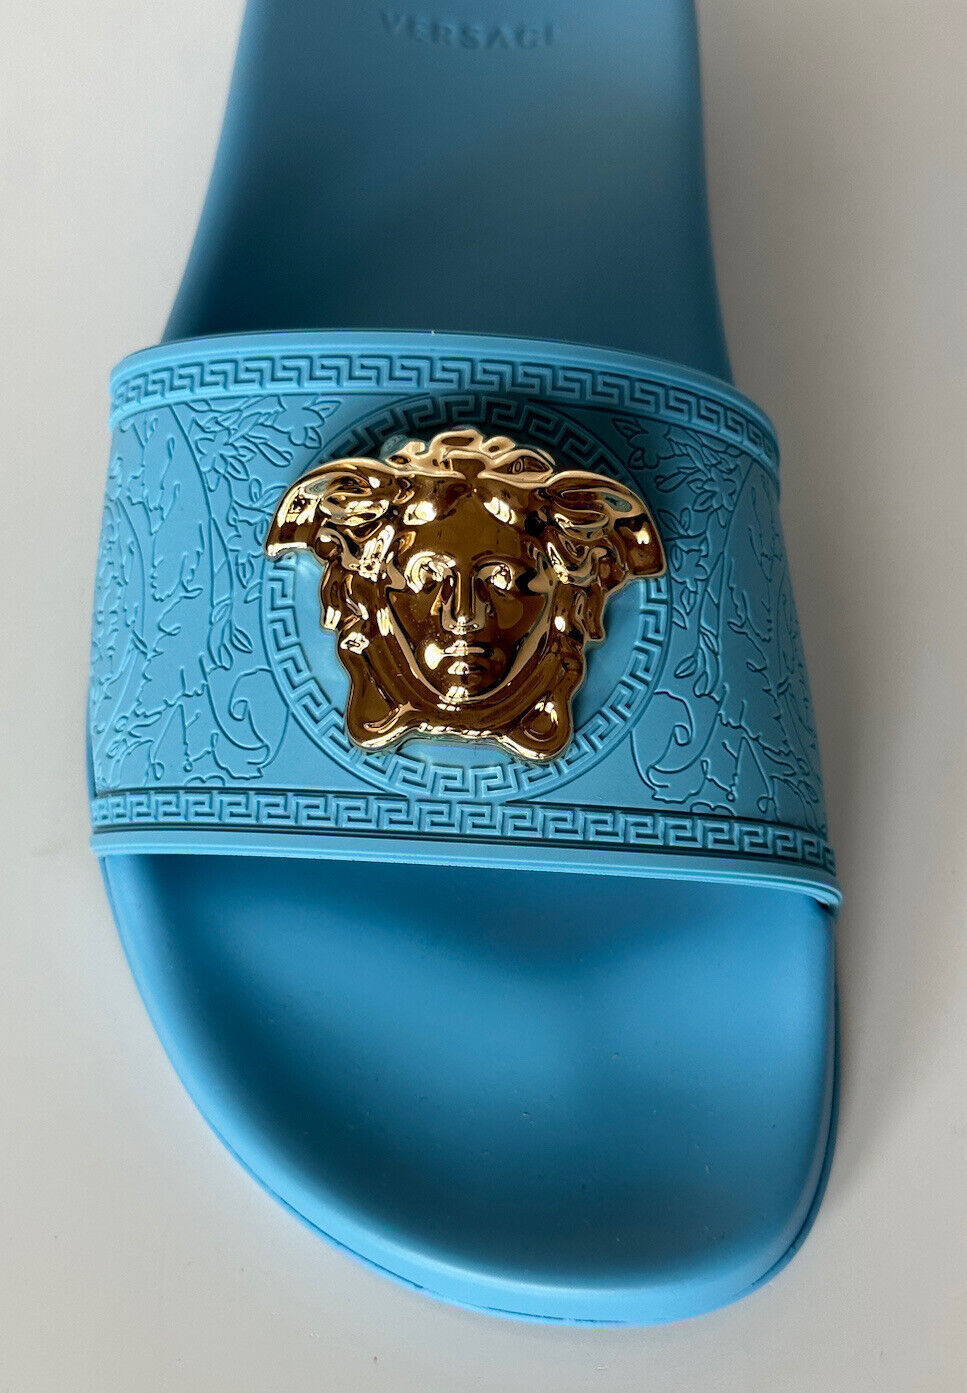 NIB 450 долларов США Versace Gold Medusa Босоножки-шлёпанцы Небесно-голубой 9 США (39) 1004190 IT 